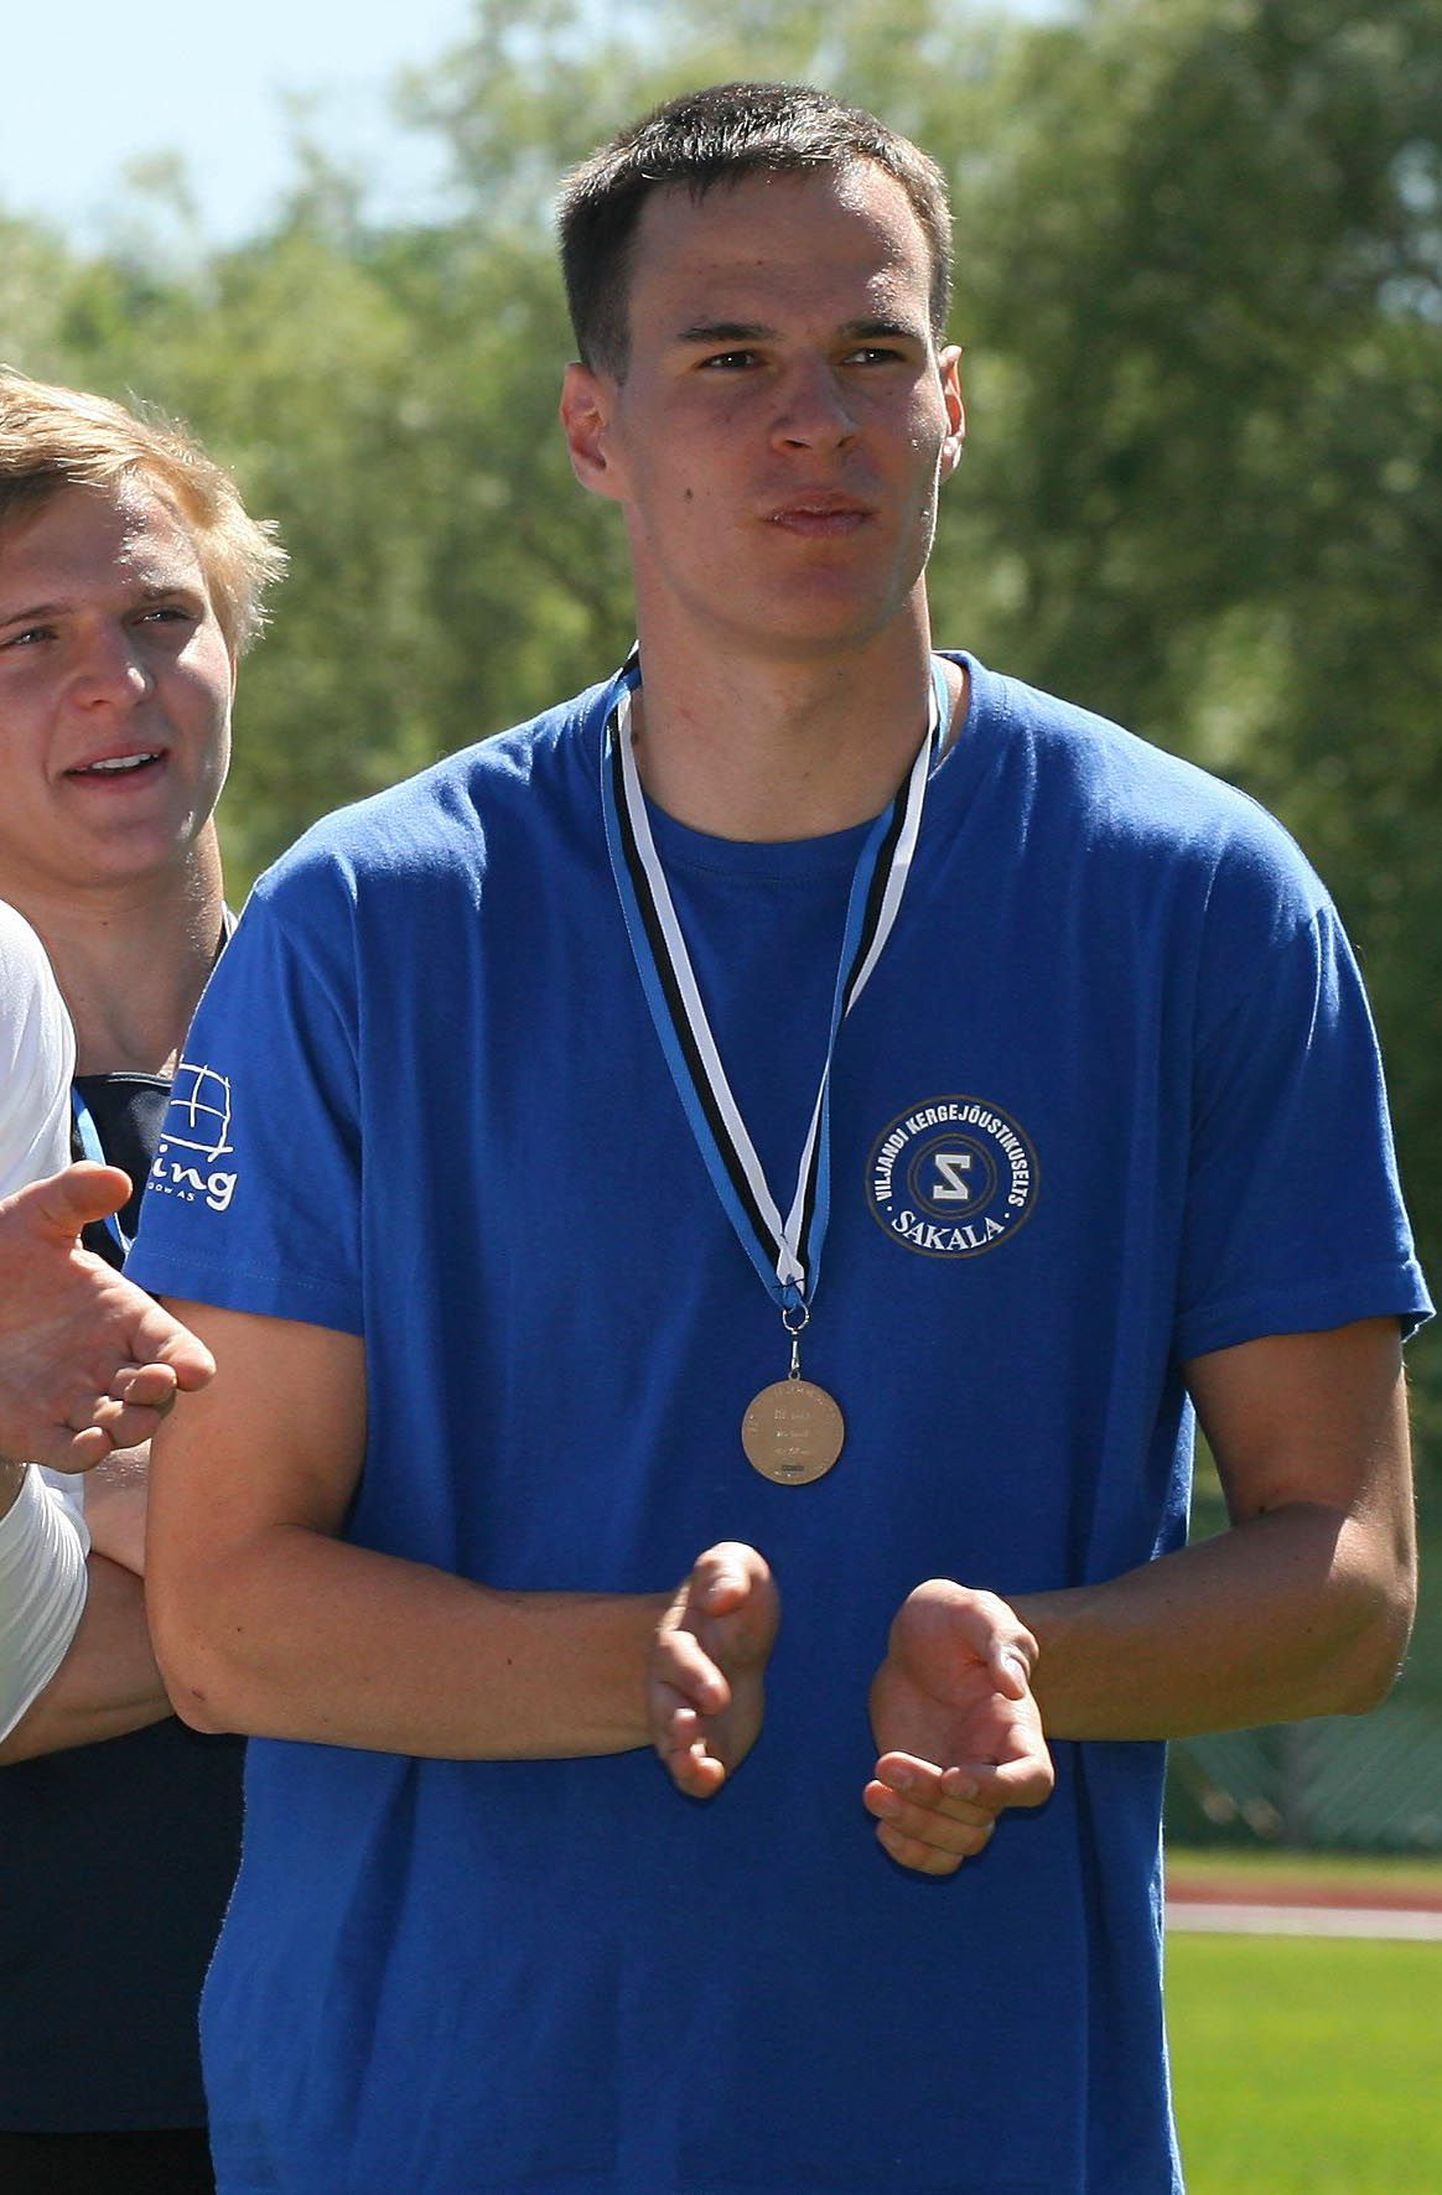 Eesti sisemeistrivõistlustel kahel jooksudistantsil medalini jõudnud Rauno Künnapuu loodab kolme sekka jõuda ka välishooajal Eesti tiitlite jagamisel.